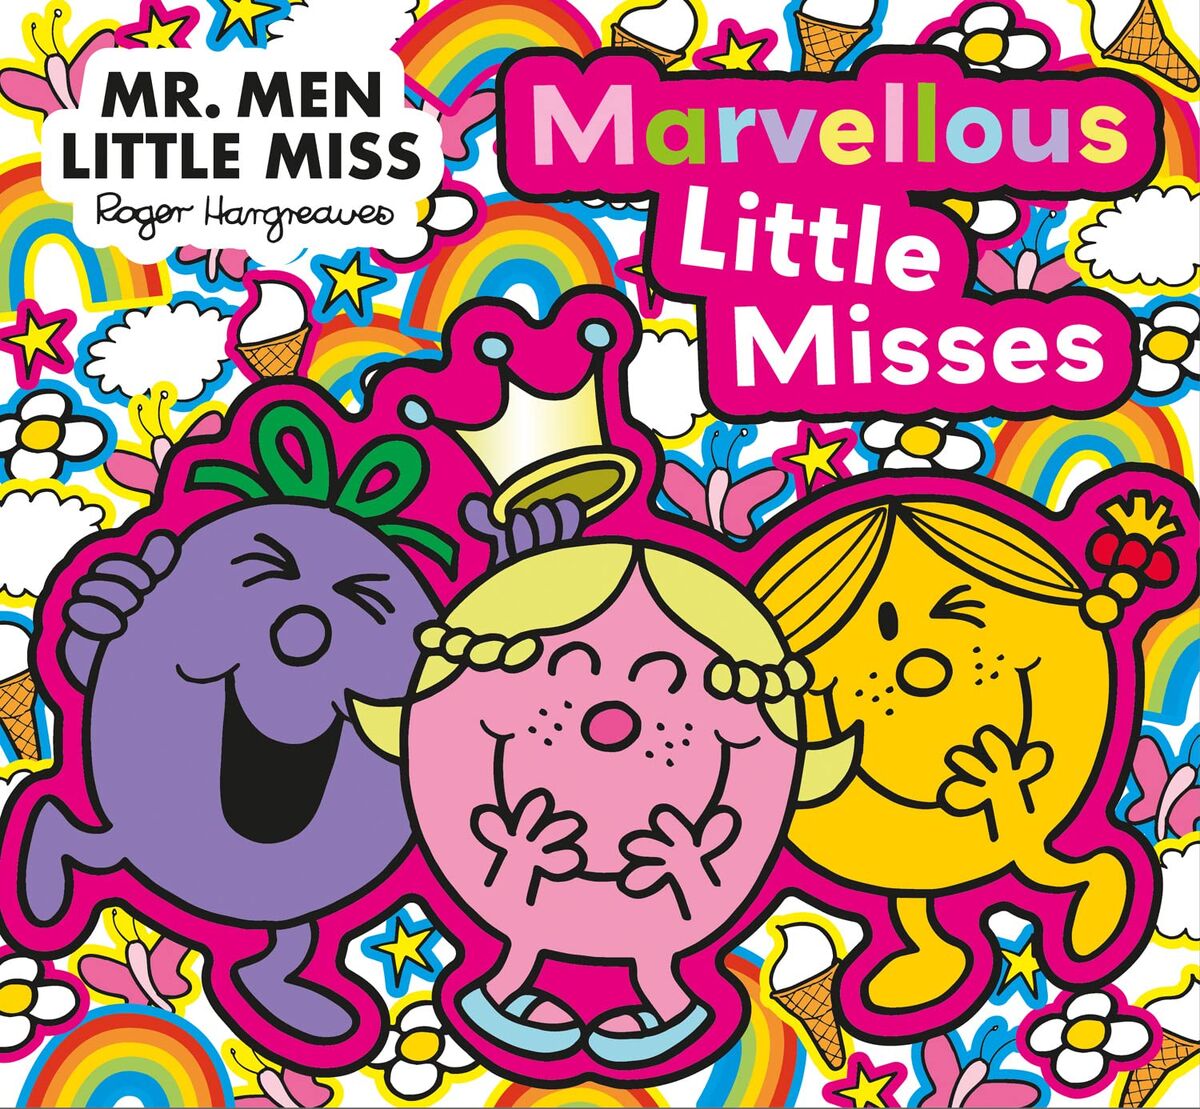 Mr. Men Little Miss: The Marvellous Little Misses | Mr. Men Wiki | Fandom